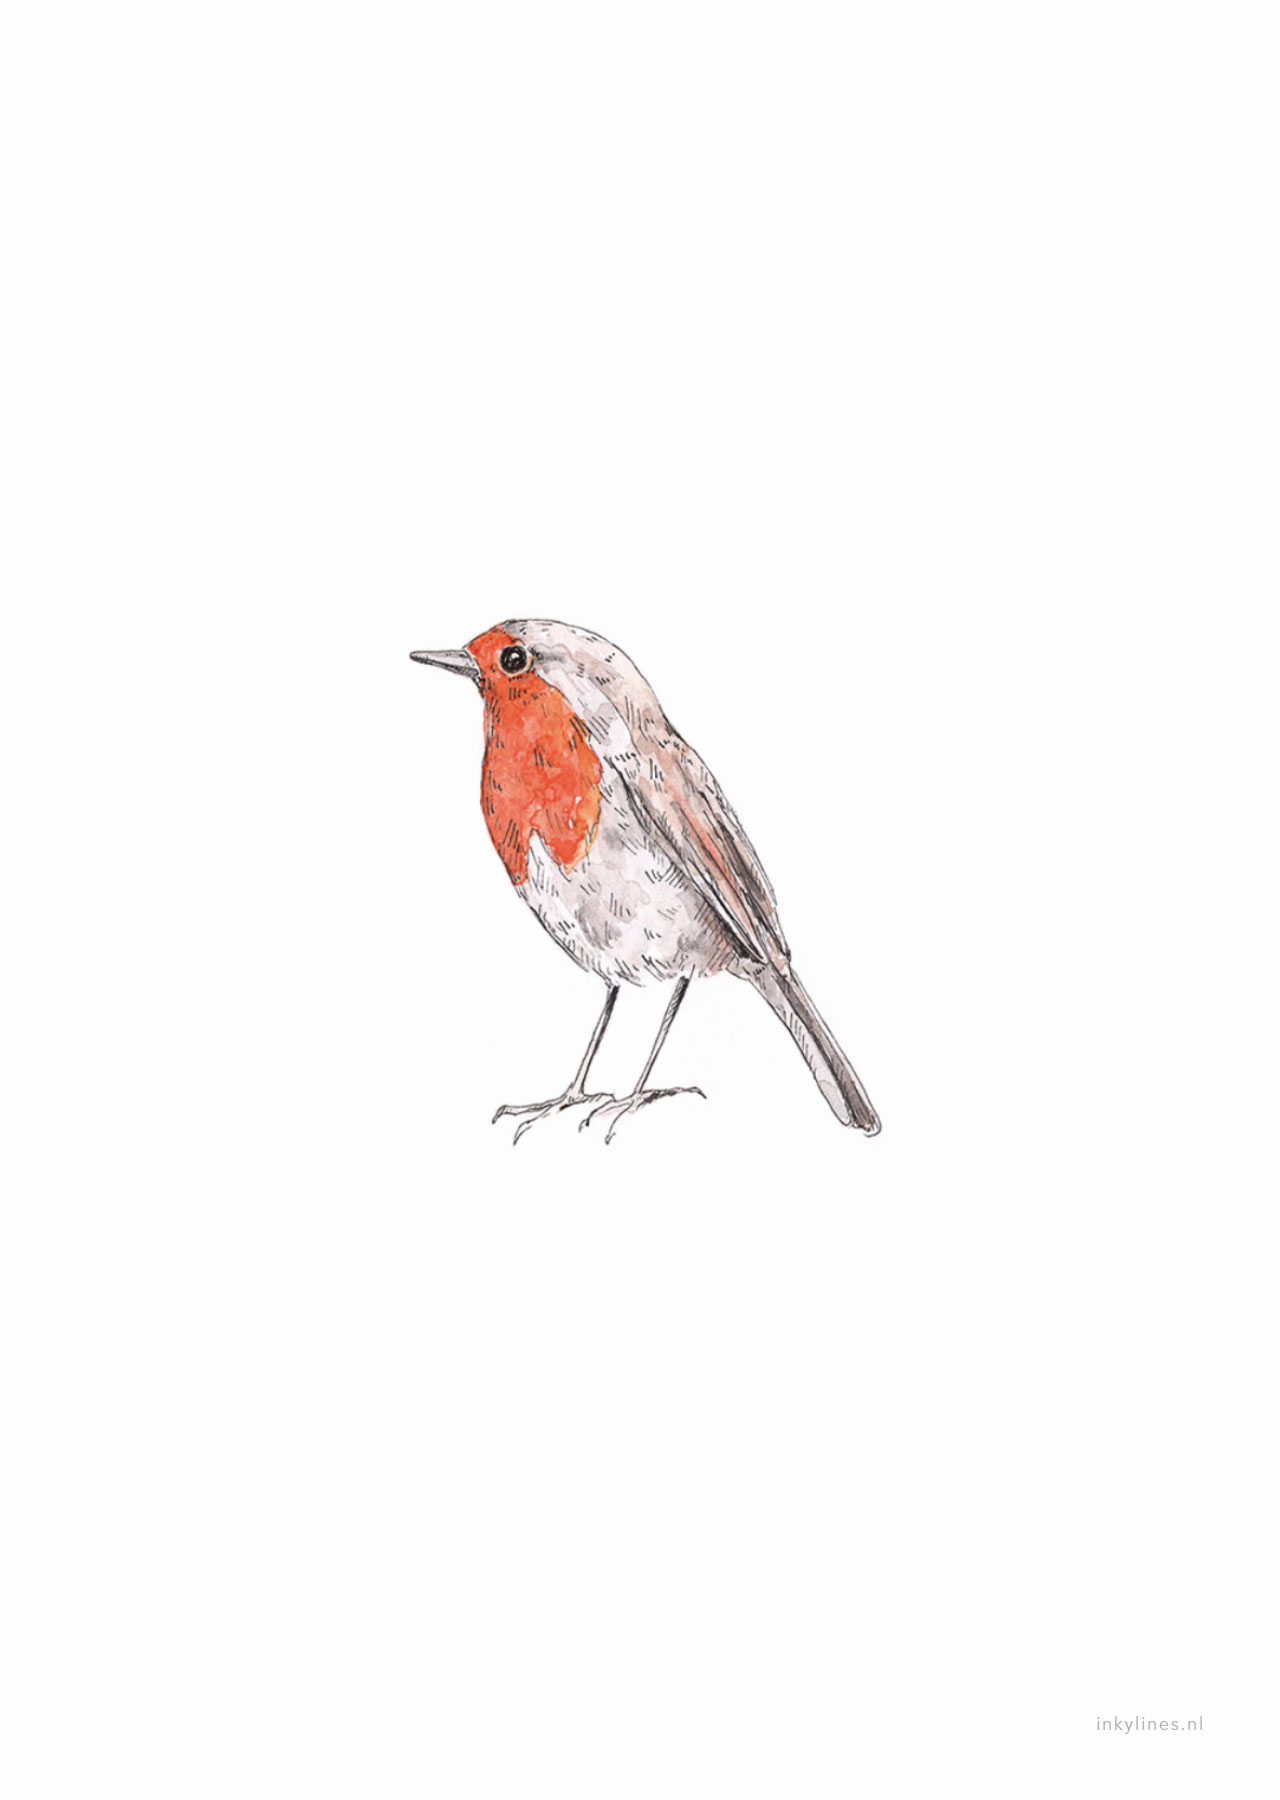 Нарисовать птицу с красной грудкой